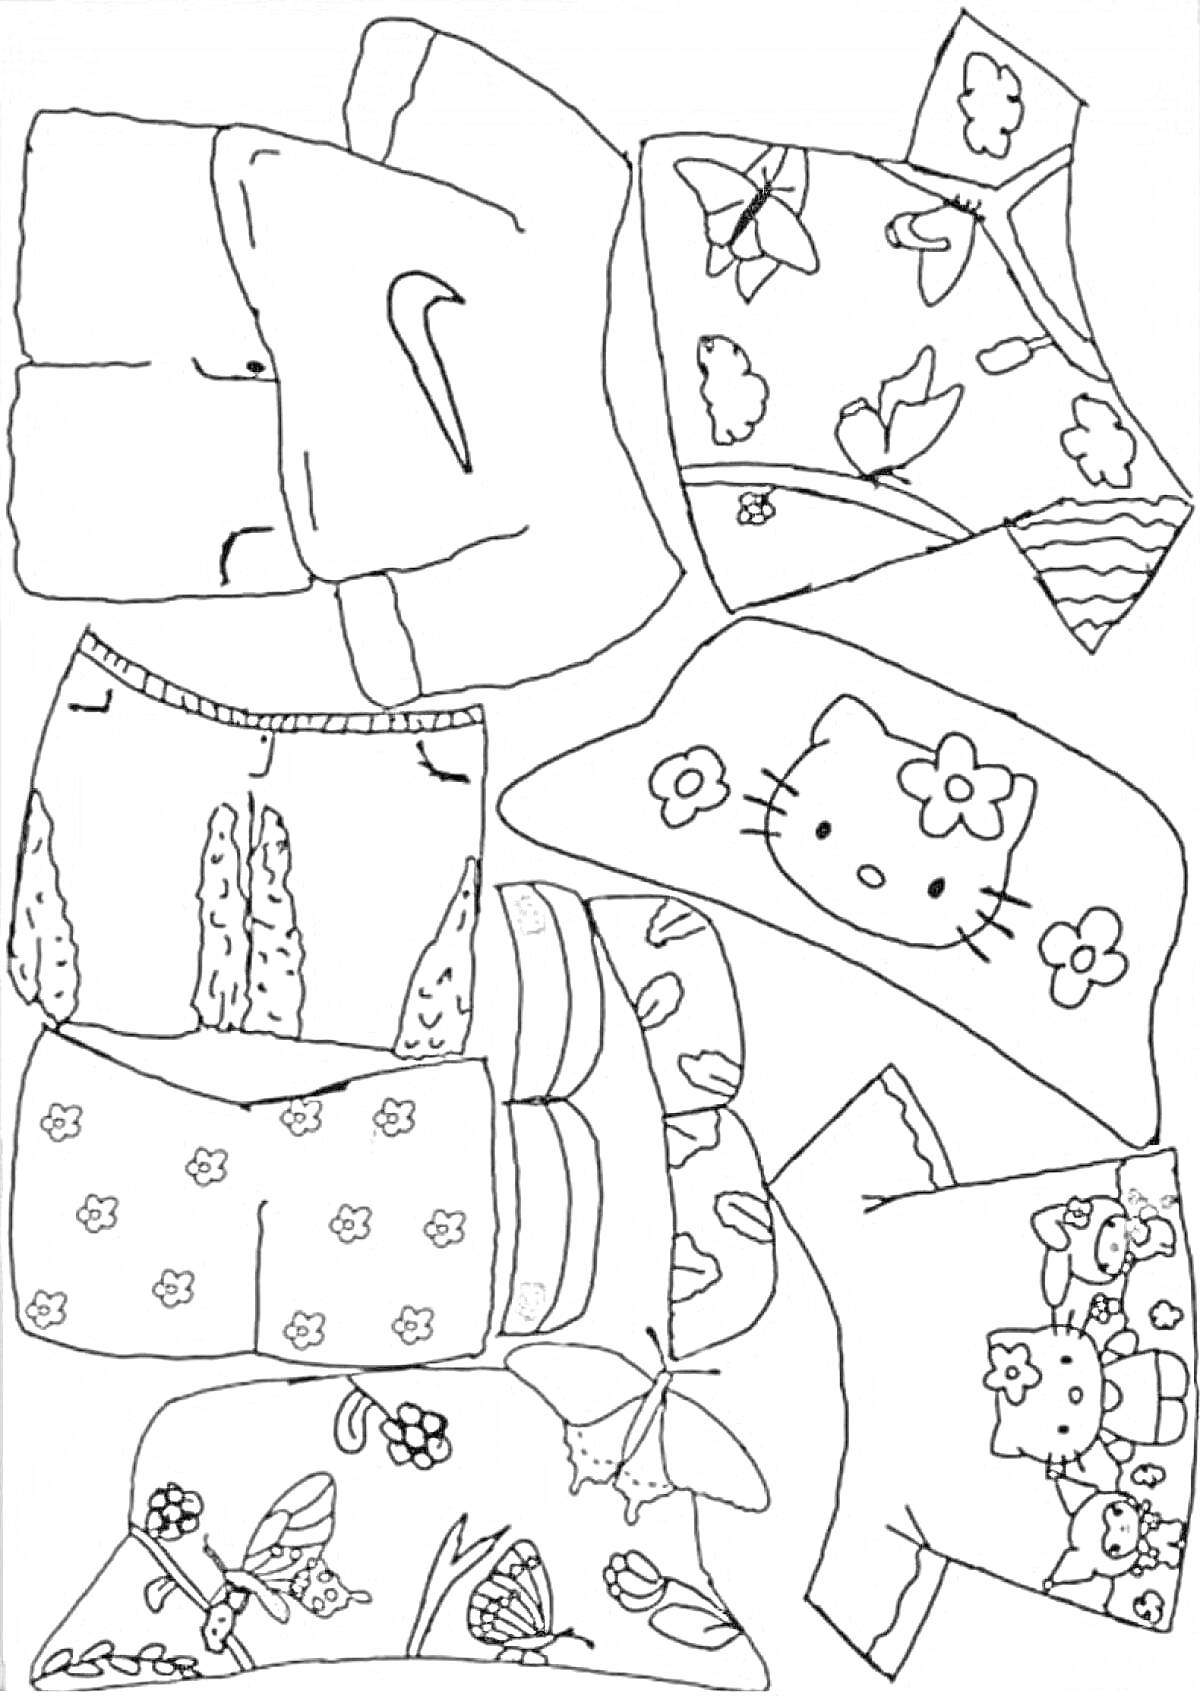 Раскраска одежда для уточки лалафанфан - футболка с логотипом, рубашка с цветочным принтом, шорты с рисунками кактусов, шорты с цветочным узором, панама с мультяшной кошечкой, комплект одежды с изображением клубники